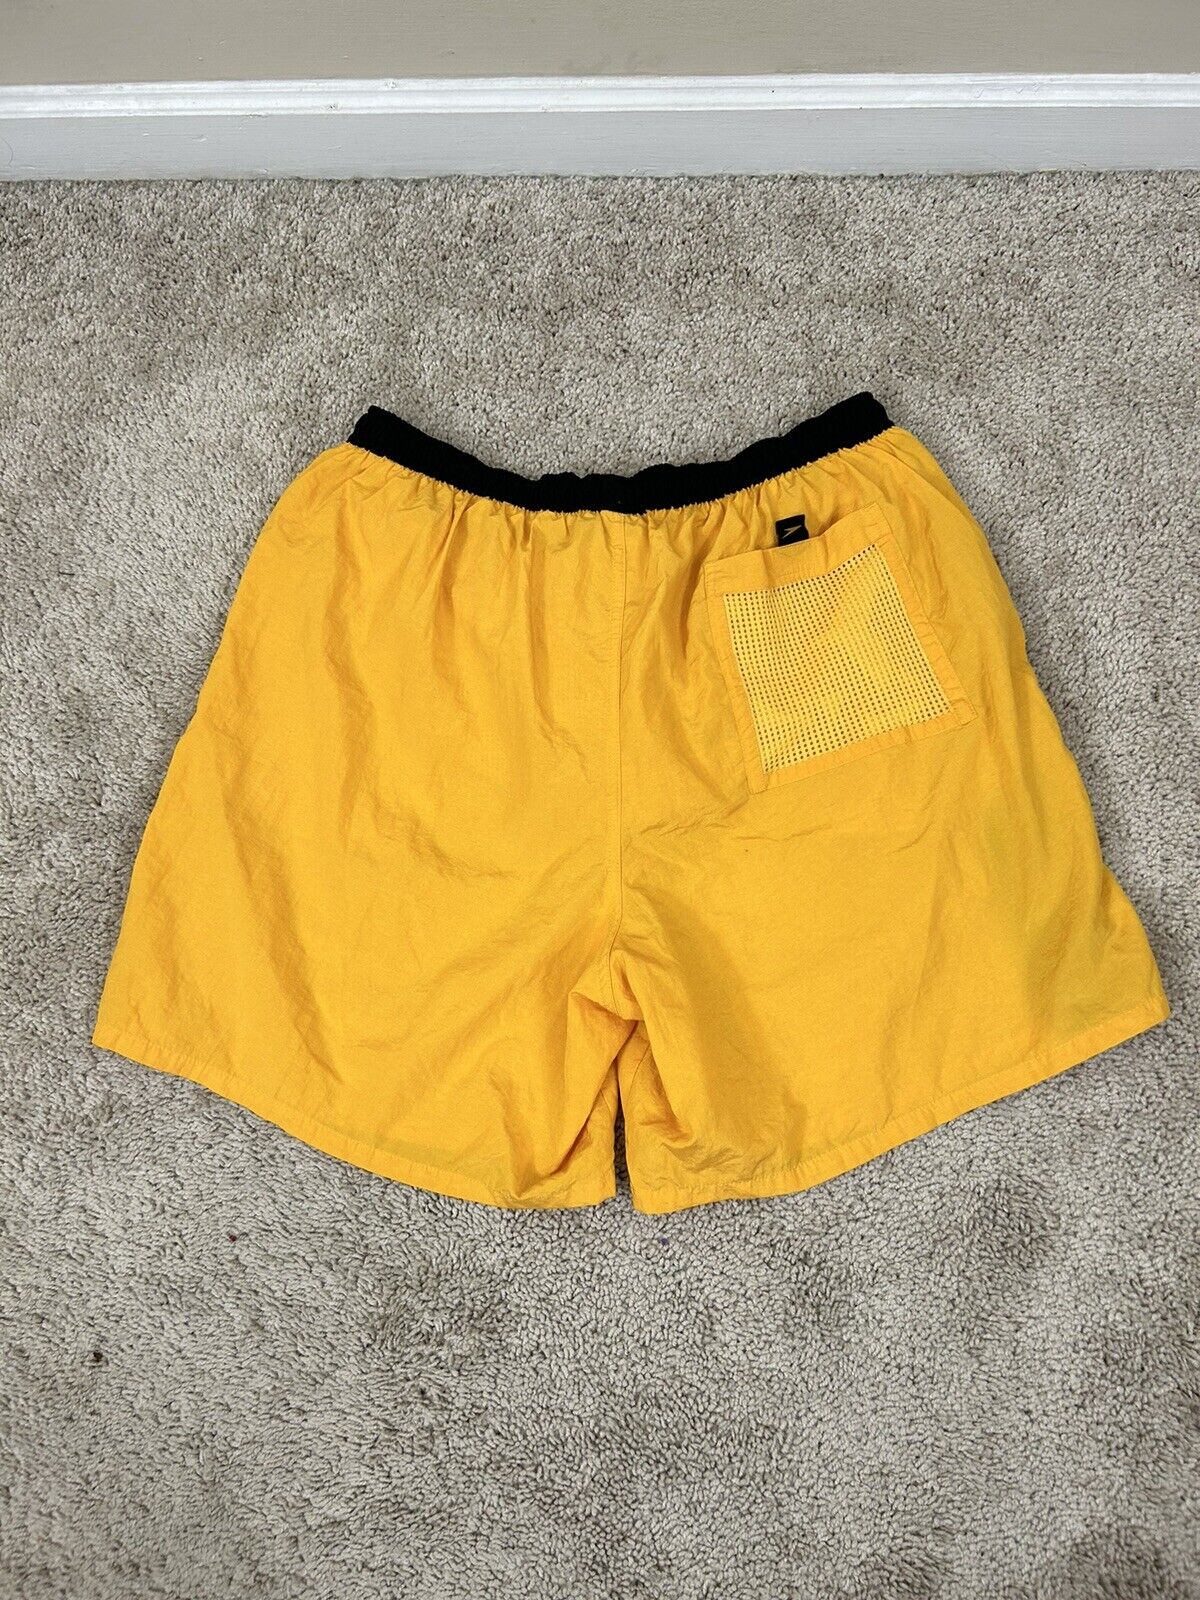 Speedo Swim Trunks Shorts Mens Size Large  Above … - image 2